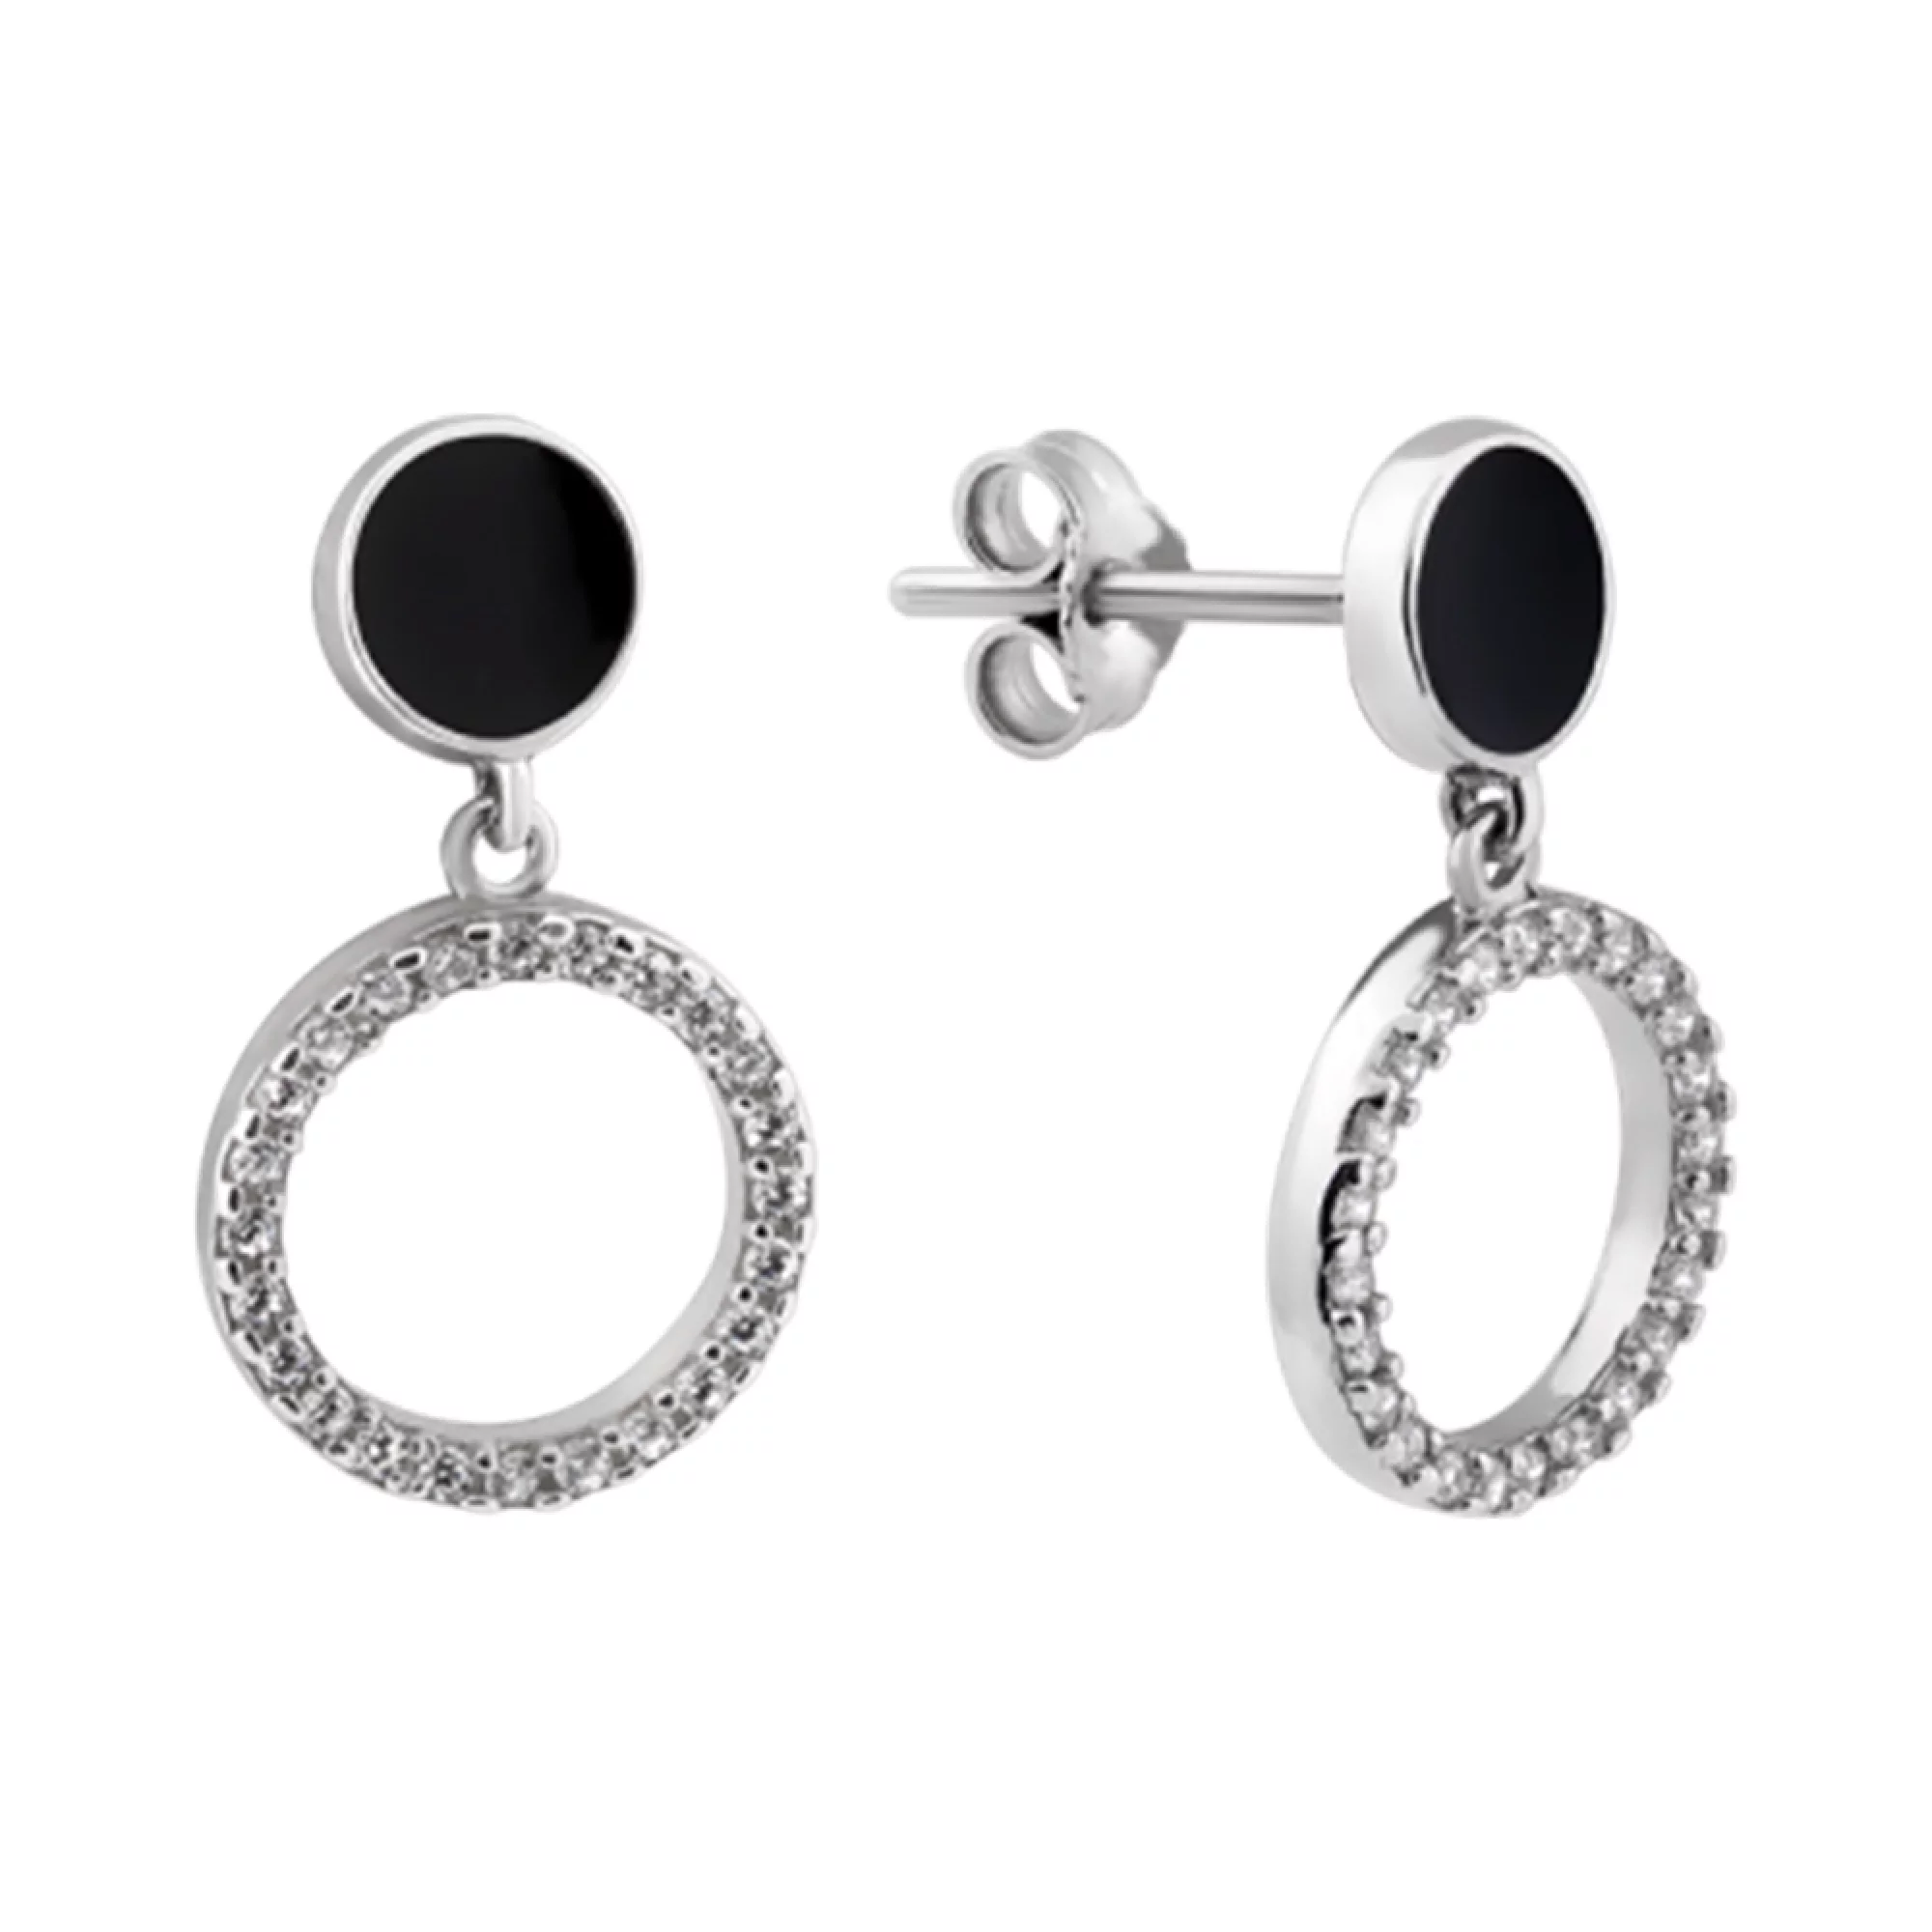 Сережки-гвоздики зі срібла з круглими підвісами,емаллю та фіанітом - 1444833 – зображення 1